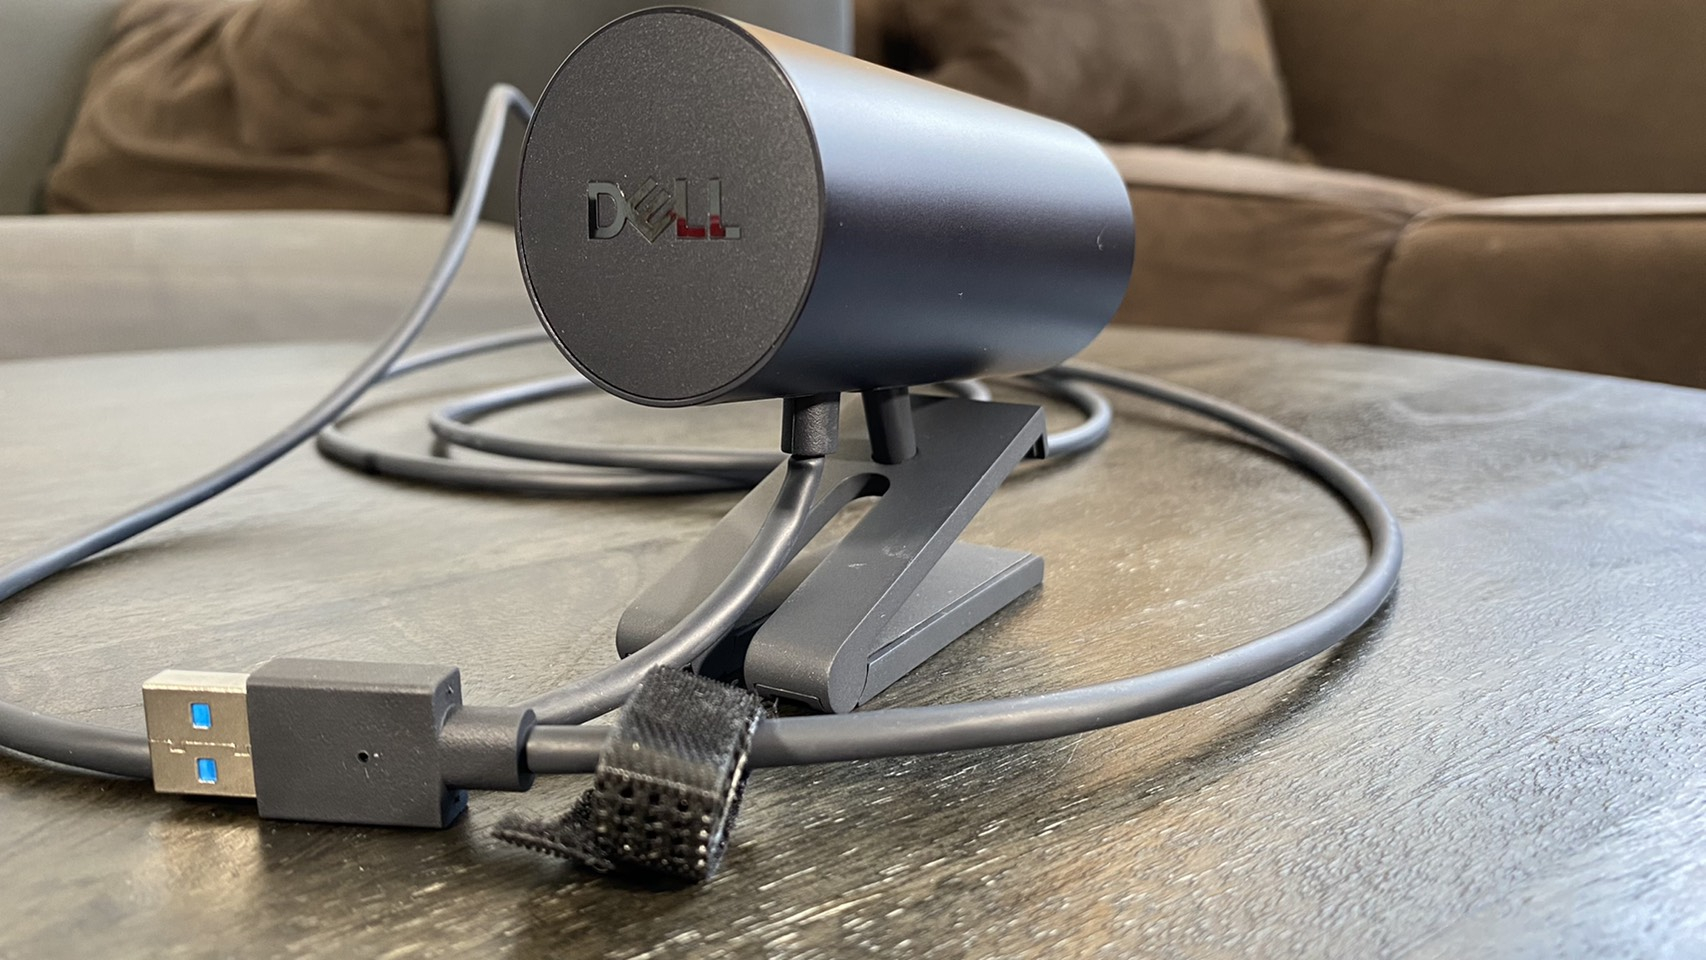 Gumagamit ang Dell Ultrasharp Webcam ng USB 3.0 / 3.1 / 3.2